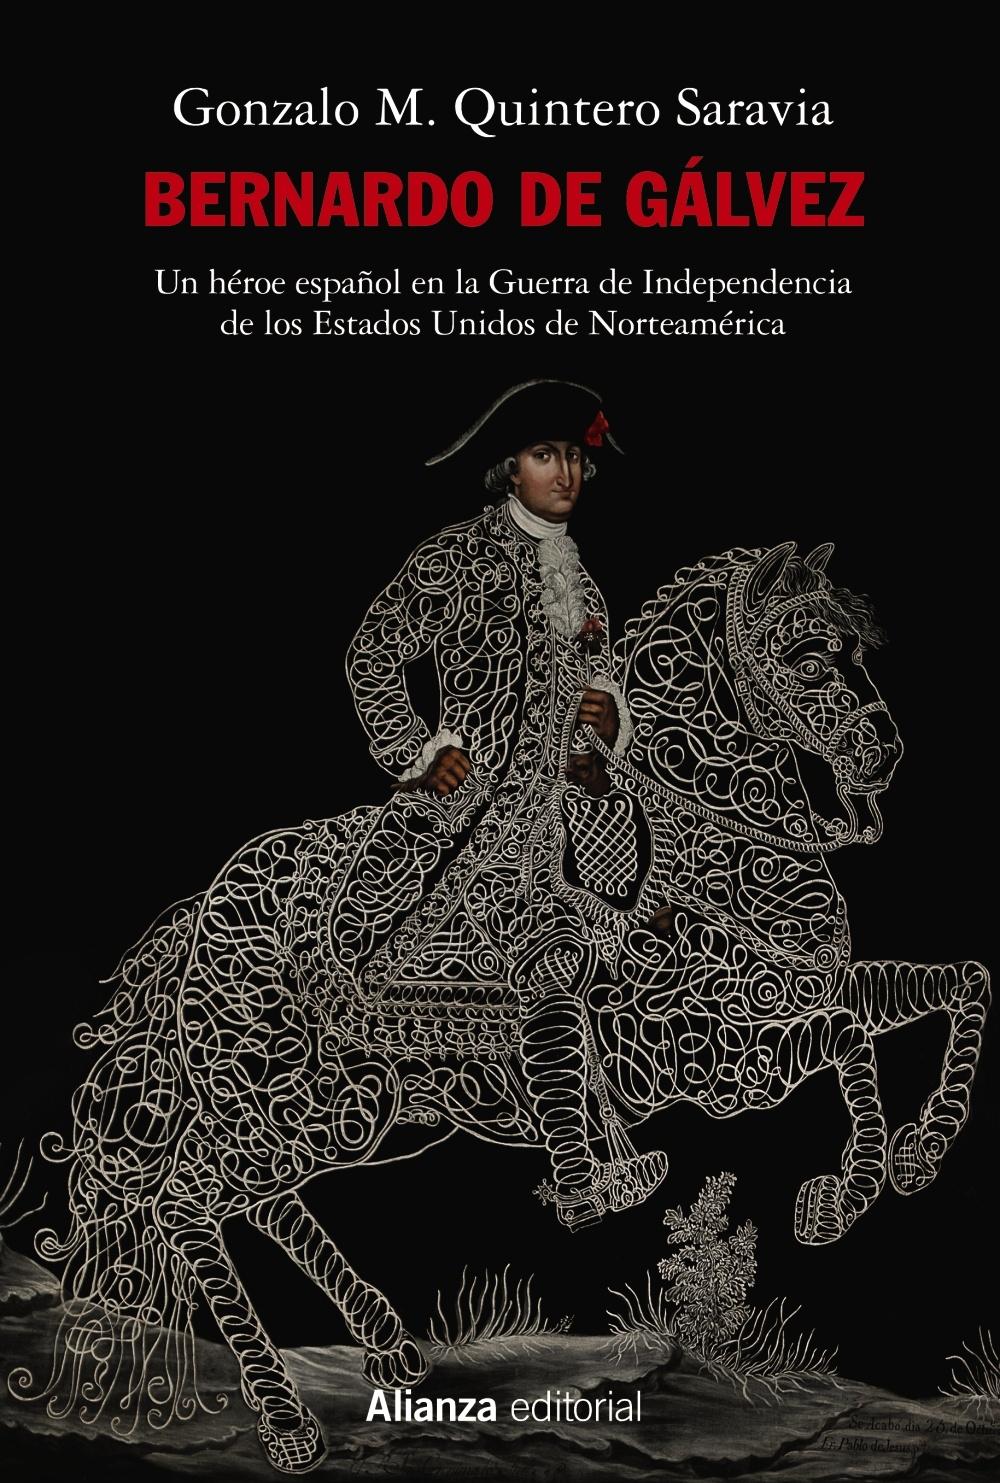 Bernardo de Gálvez "Un héroe español en la Guerra de Independencia de los Estados Unidos de Norteamérica". 